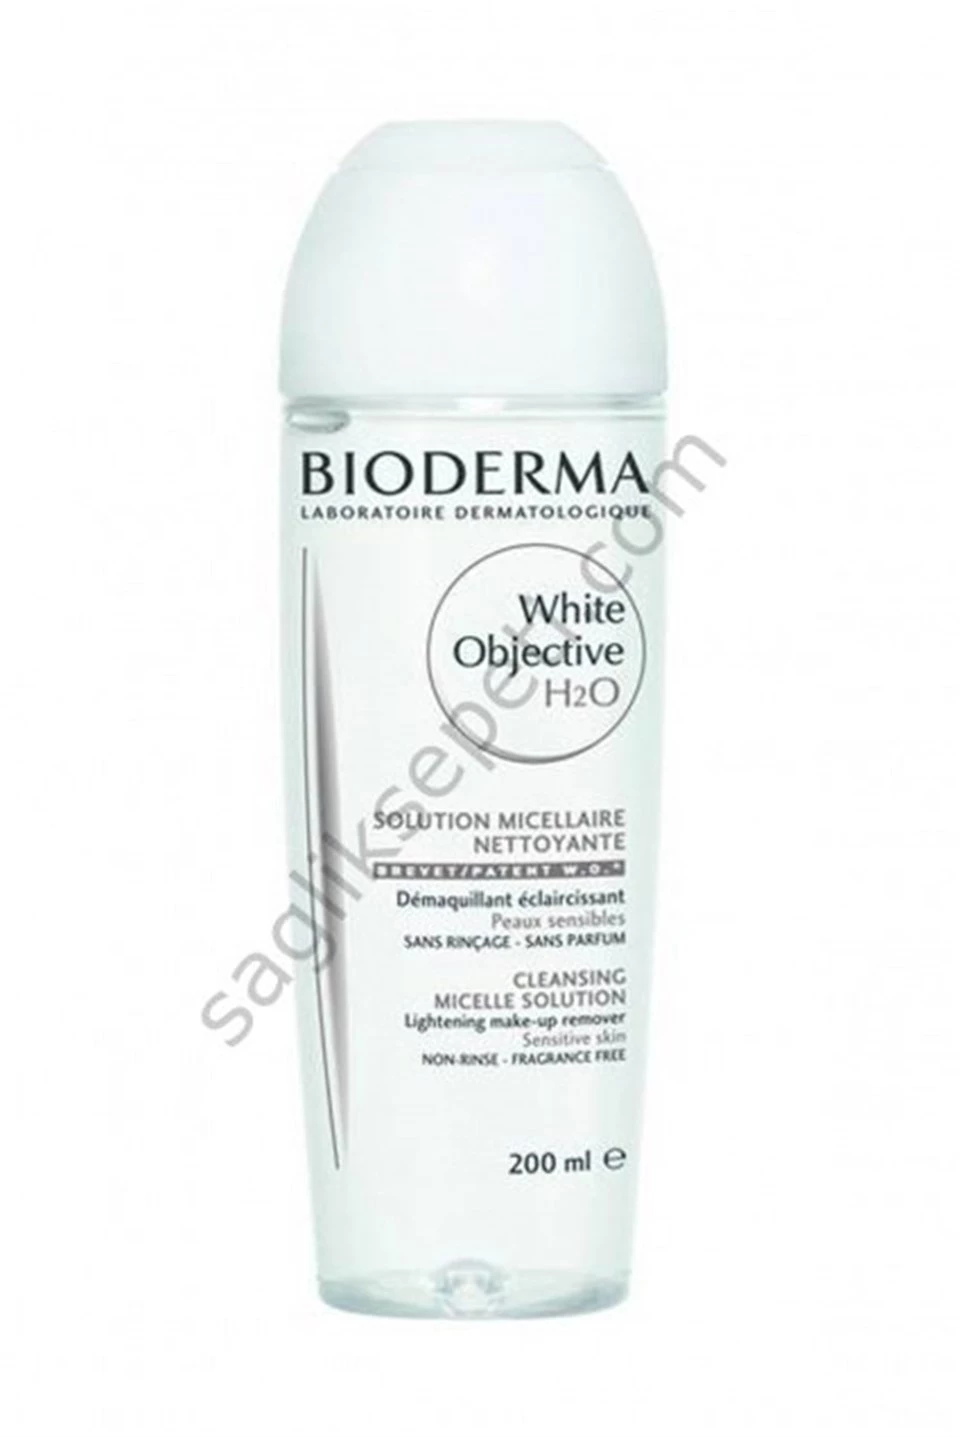 Bioderma White Objective H2O 200ml